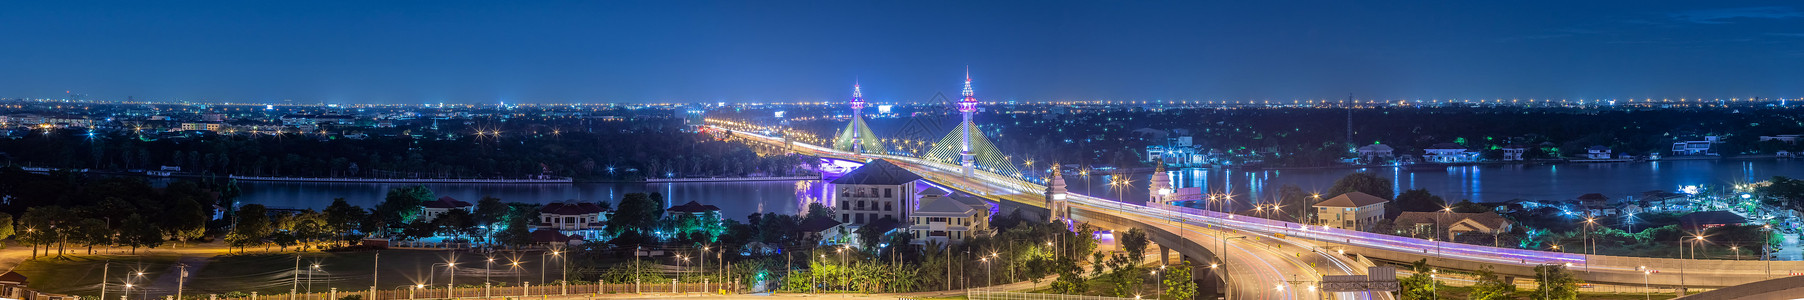 桥上的全景交通 晚上在Chao Phraya河上空的Bridge街道道路天际蓝天景观蓝色建筑旅行天空市中心背景